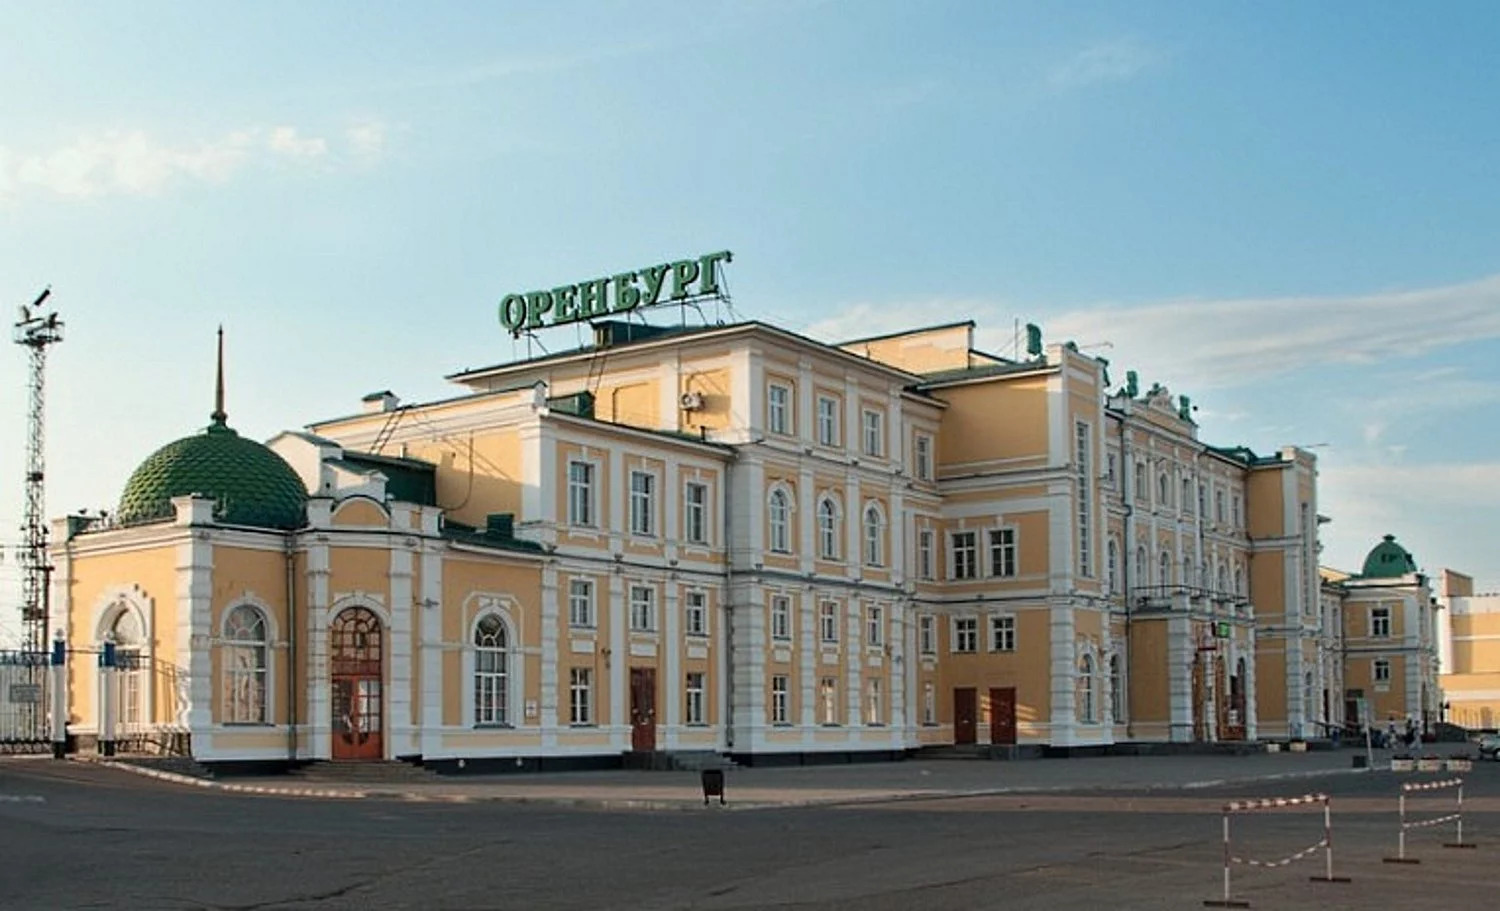 Железнодорожный вокзал Оренбург: адрес, телефоны и услуги